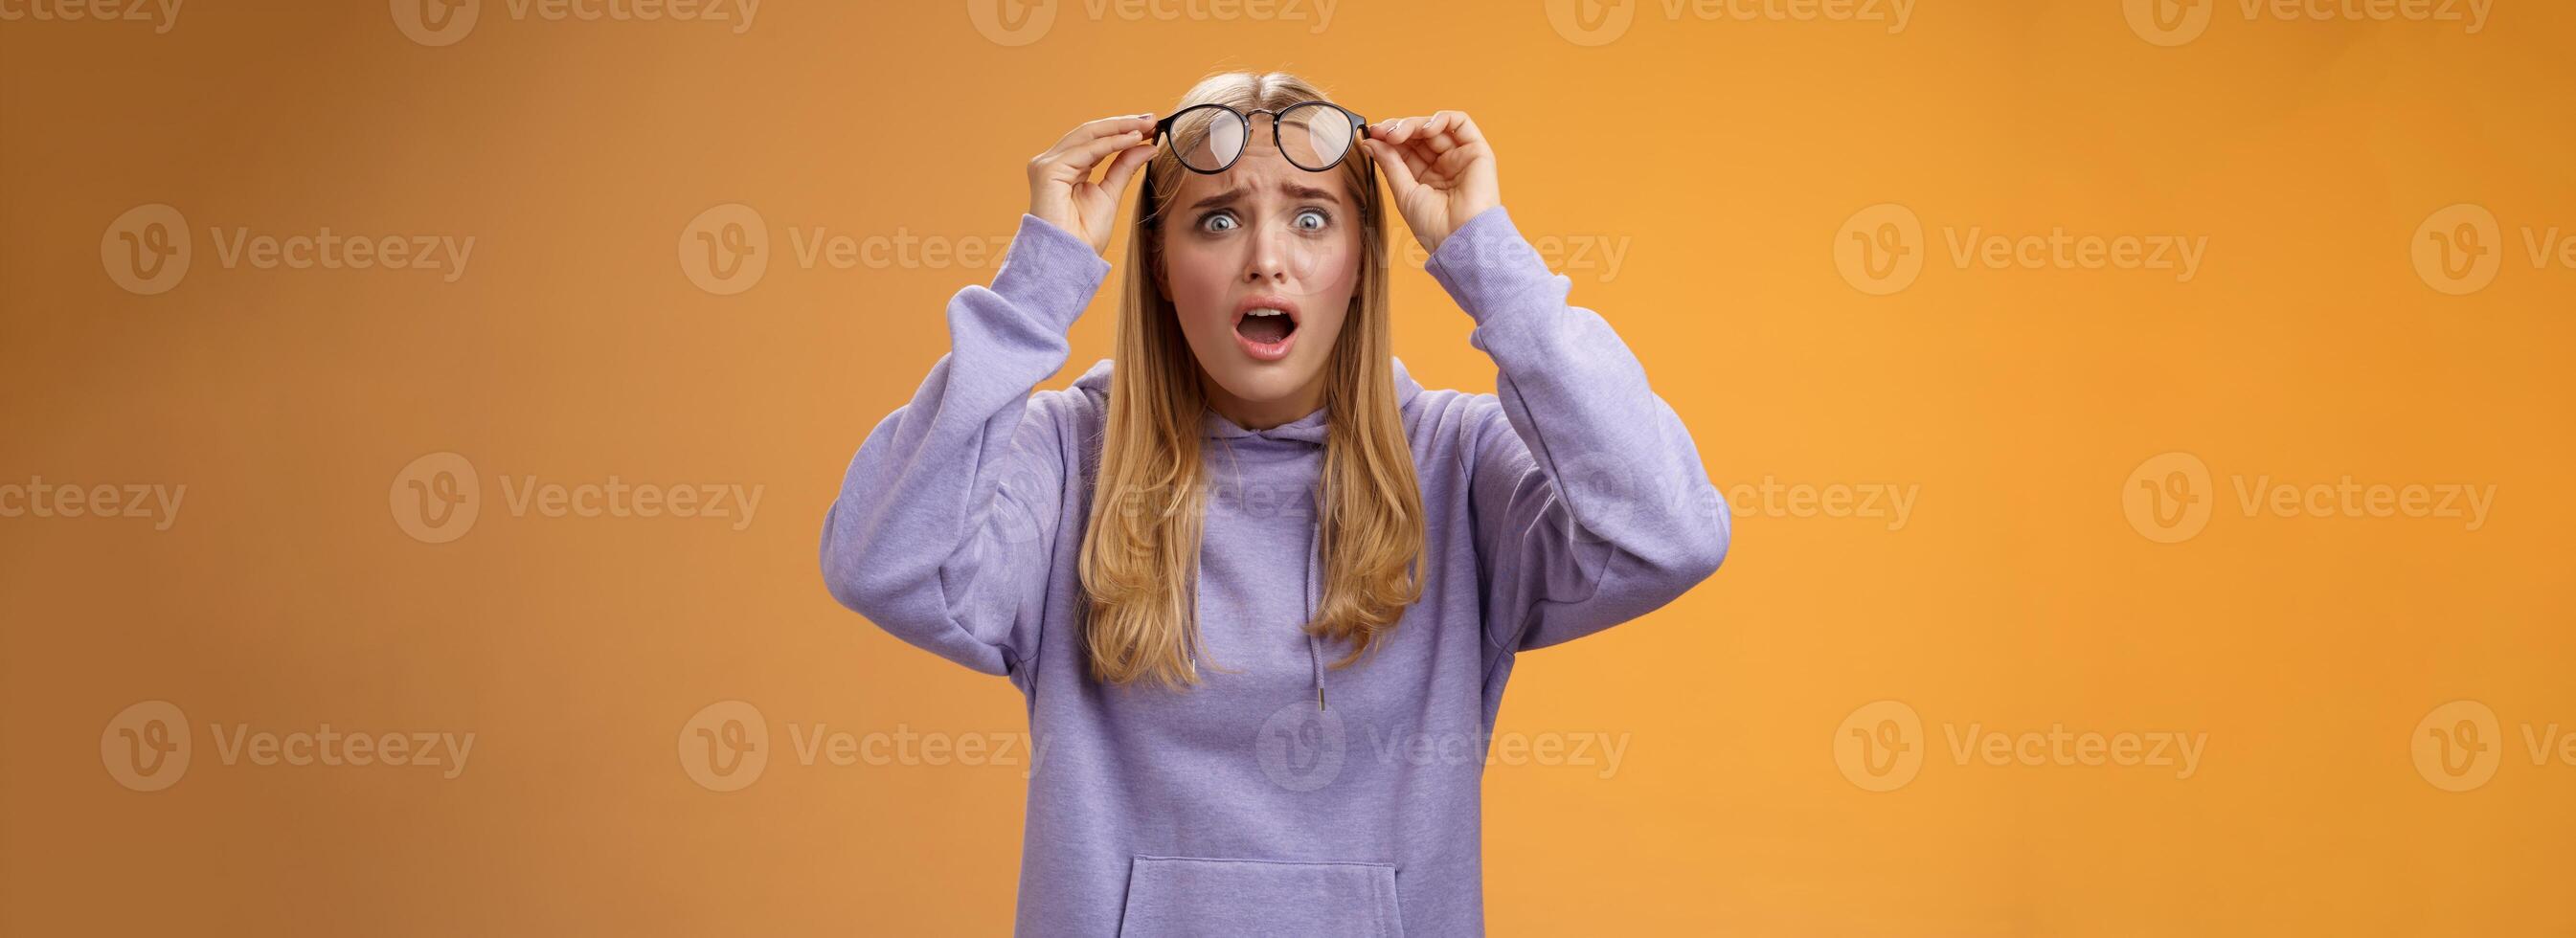 chockade bekymrad ung kvinna ser studerande ruin arbete stirrande störd upprörd ta av glasögon popping ögon kamera gasning mållös fruktansvärd olycka hände, orange bakgrund foto